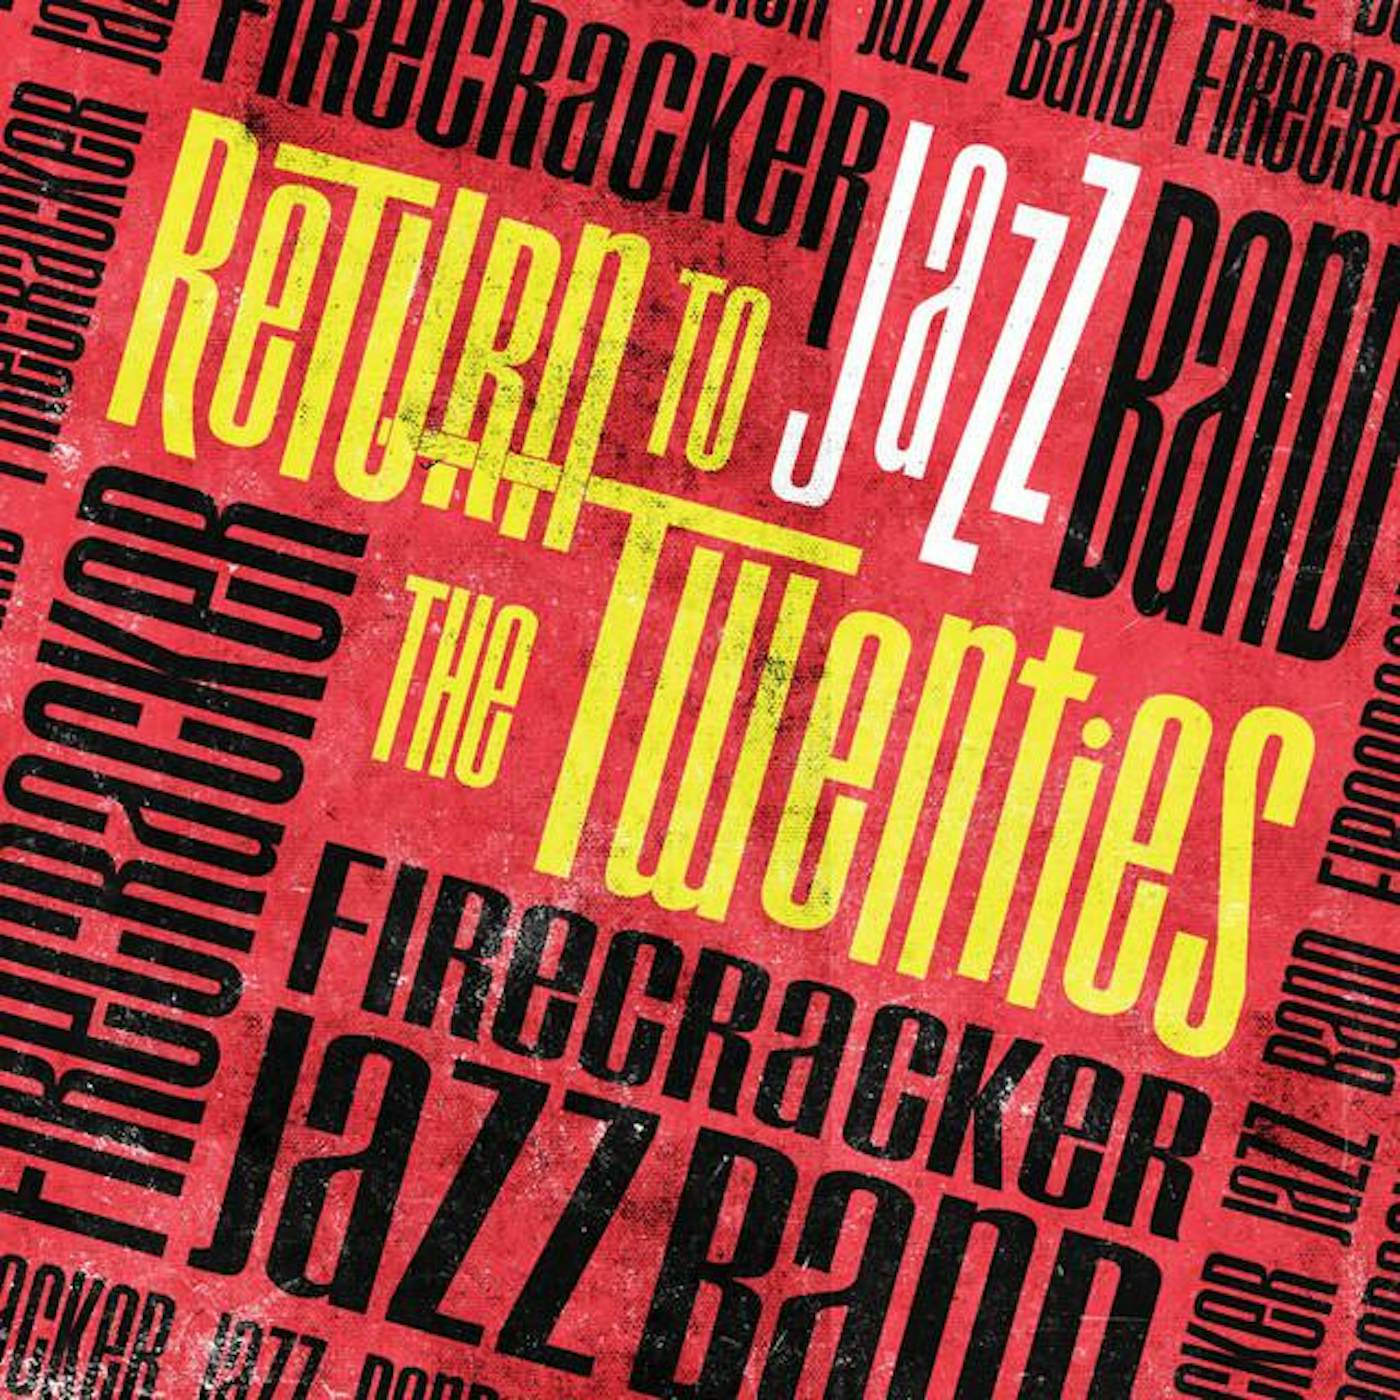 Firecracker Jazz Band